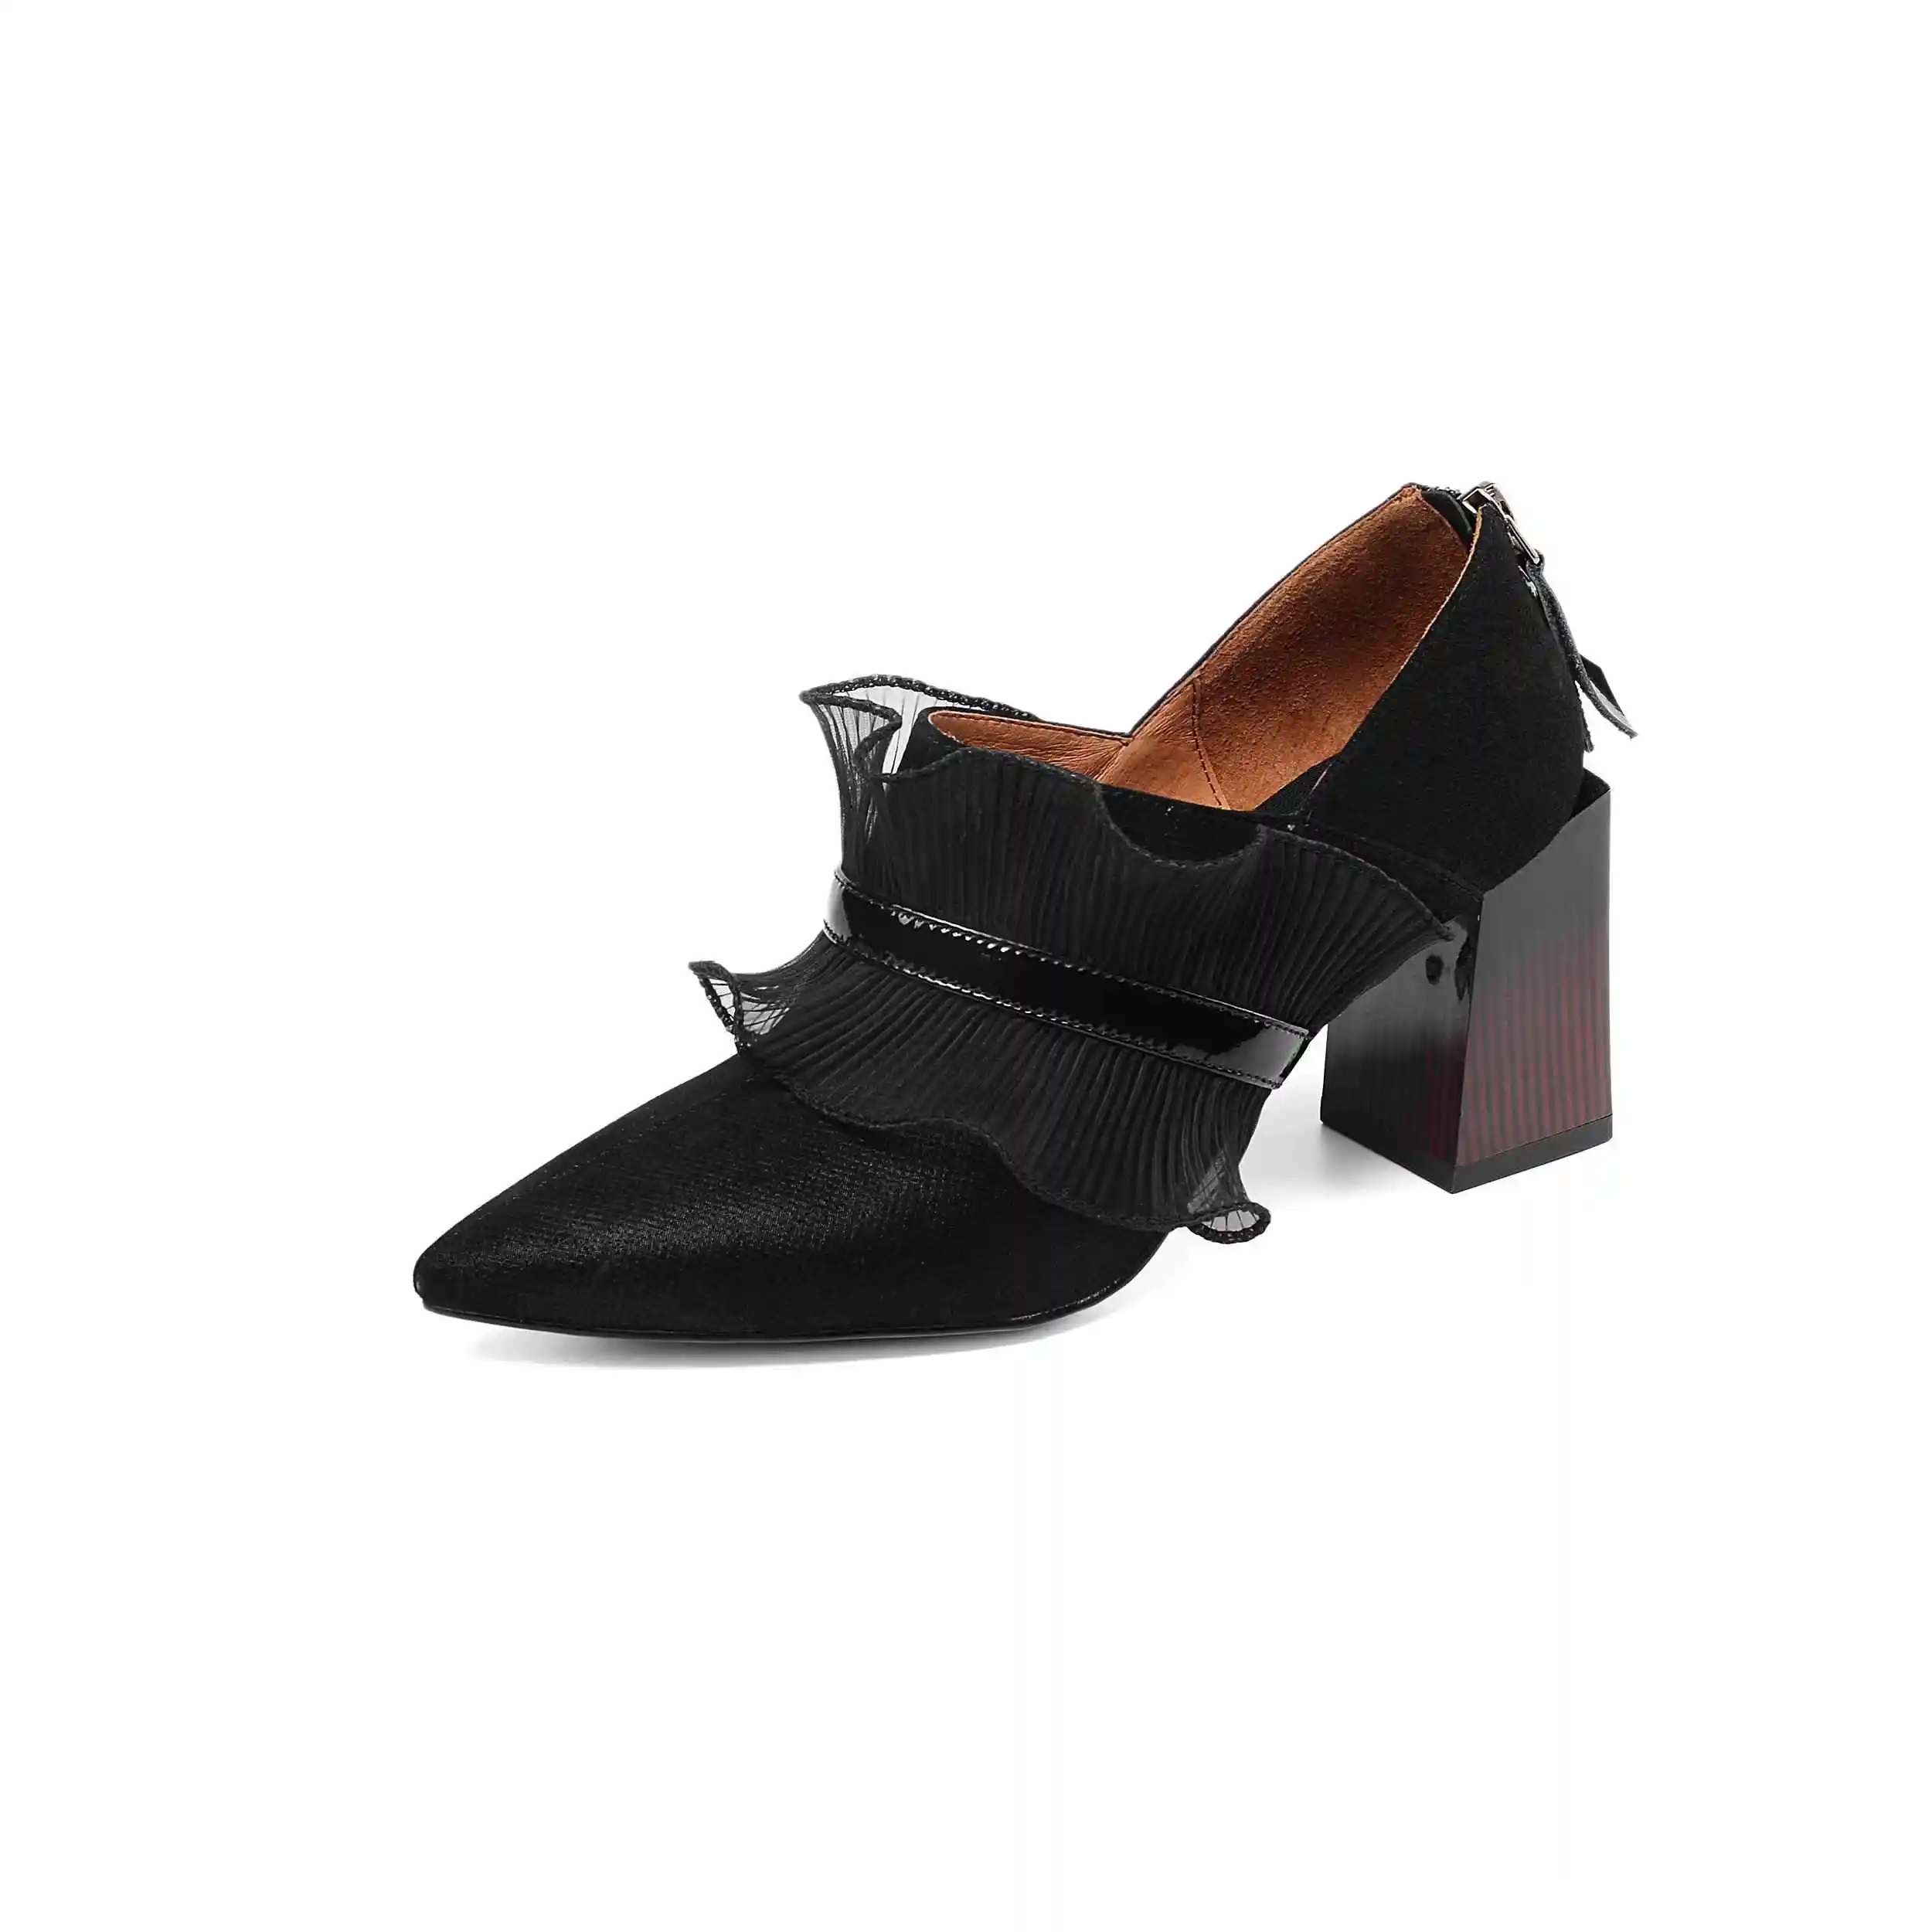 KRAZING POT/специальная Брендовая обувь из овечьей кожи; обувь на высоком каблуке с острым носком на молнии; Уличная обувь; черные кружевные Элегантные туфли-лодочки с оборками; L55 - Цвет: Черный